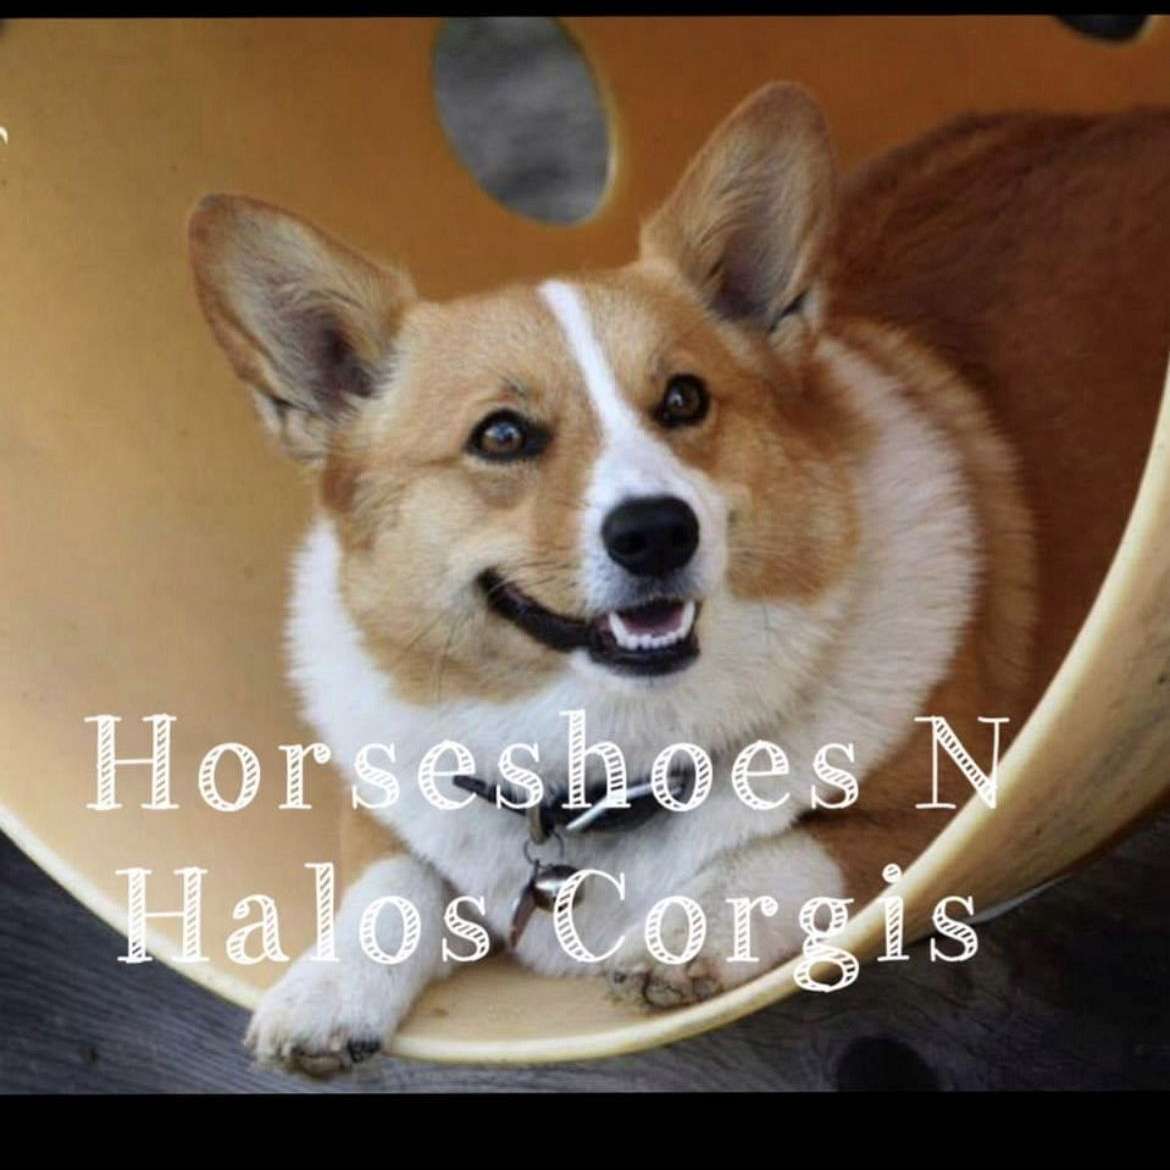 Horseshoes N Halos Corgis